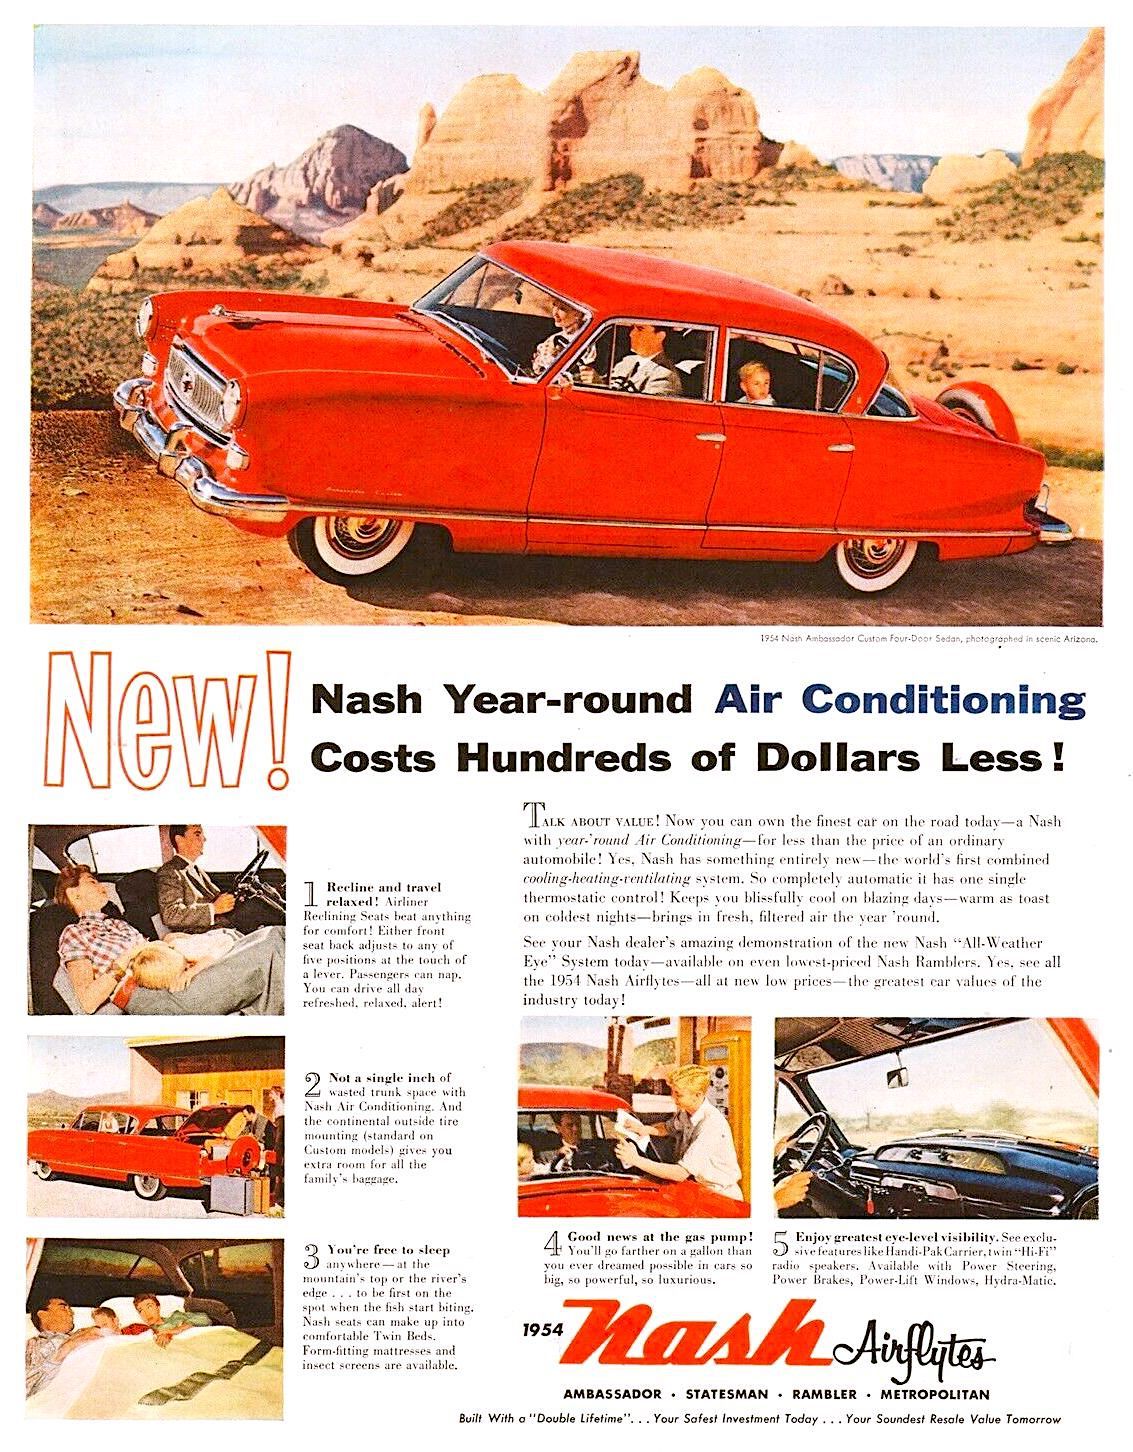 Nash Motors Co, 1954